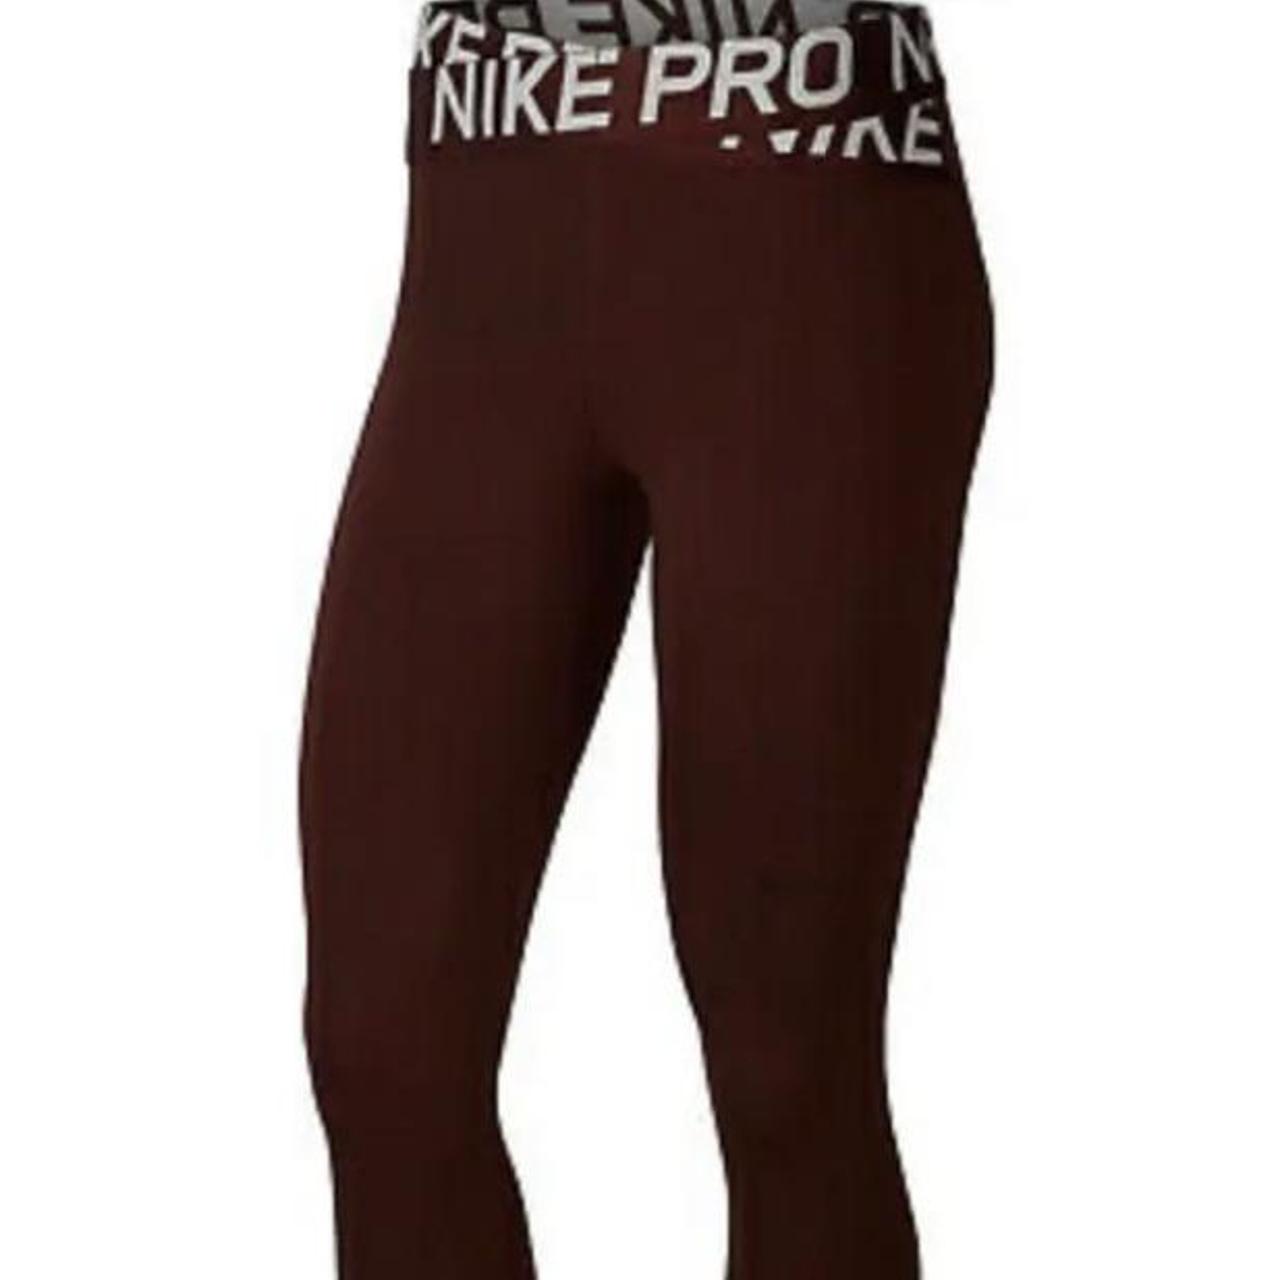 Brand New Nike Pro Intertwist Leggings -no wear, - Depop